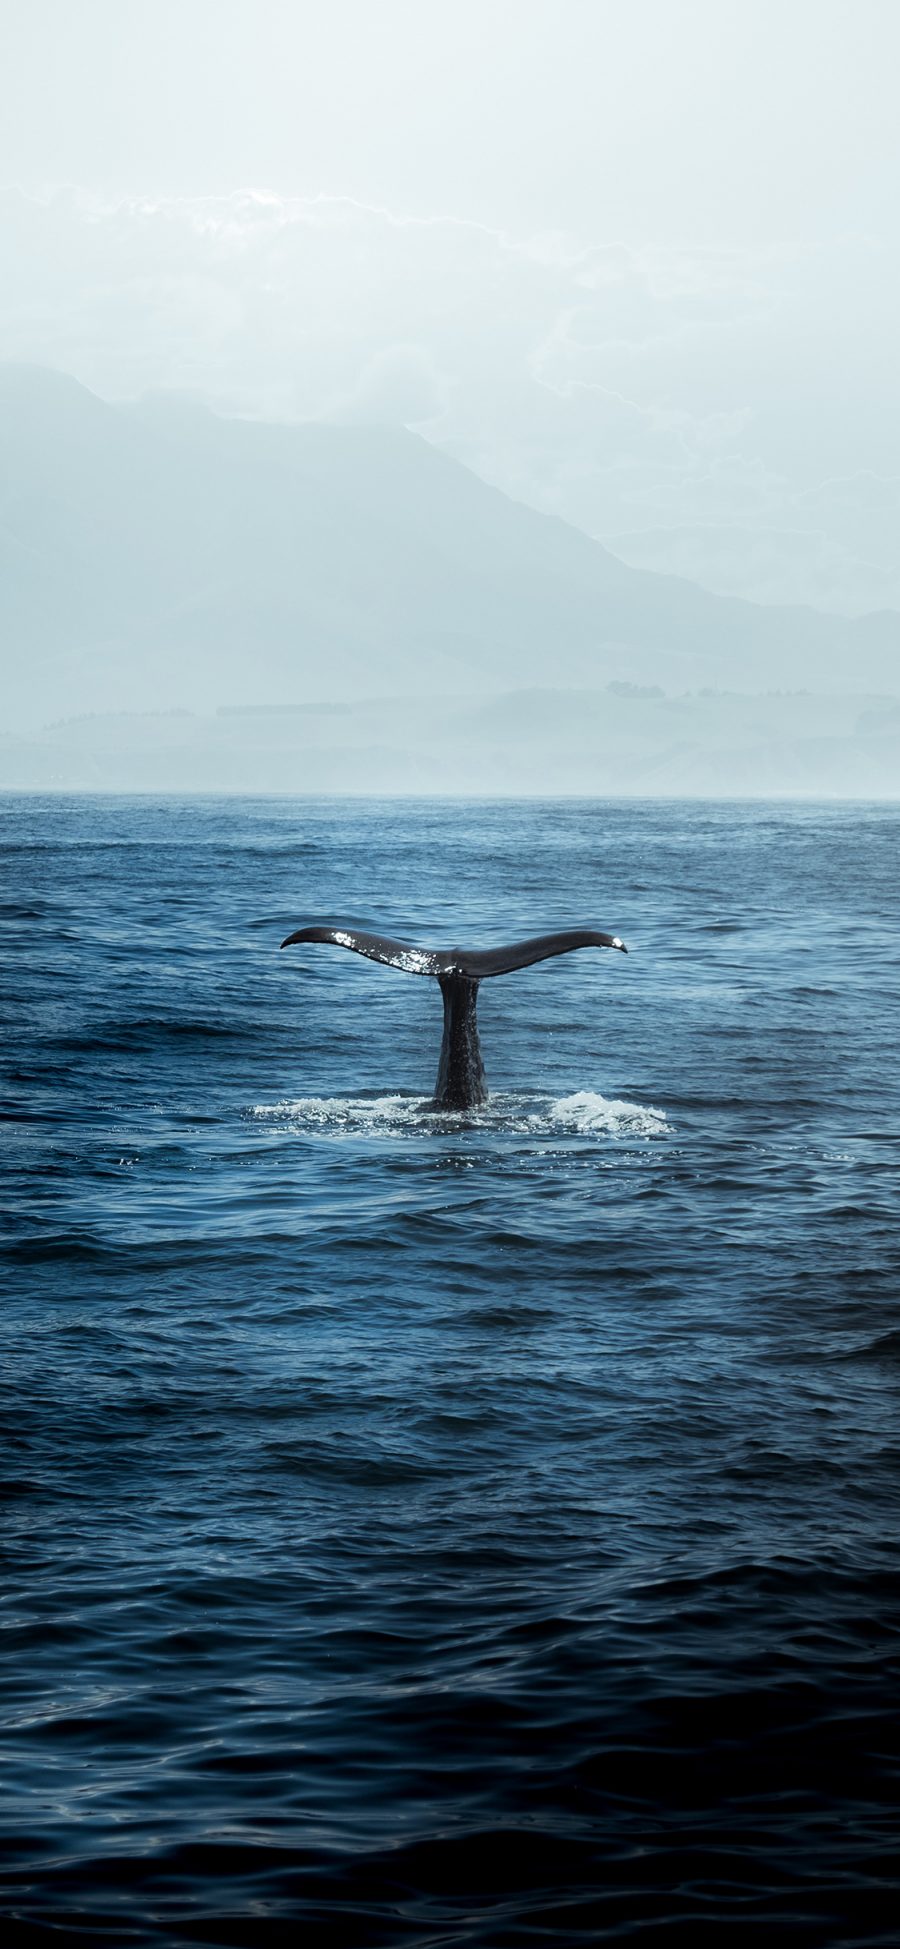 [2436×1125]海洋生物 鲸鱼 鱼尾巴 大海 苹果手机壁纸图片